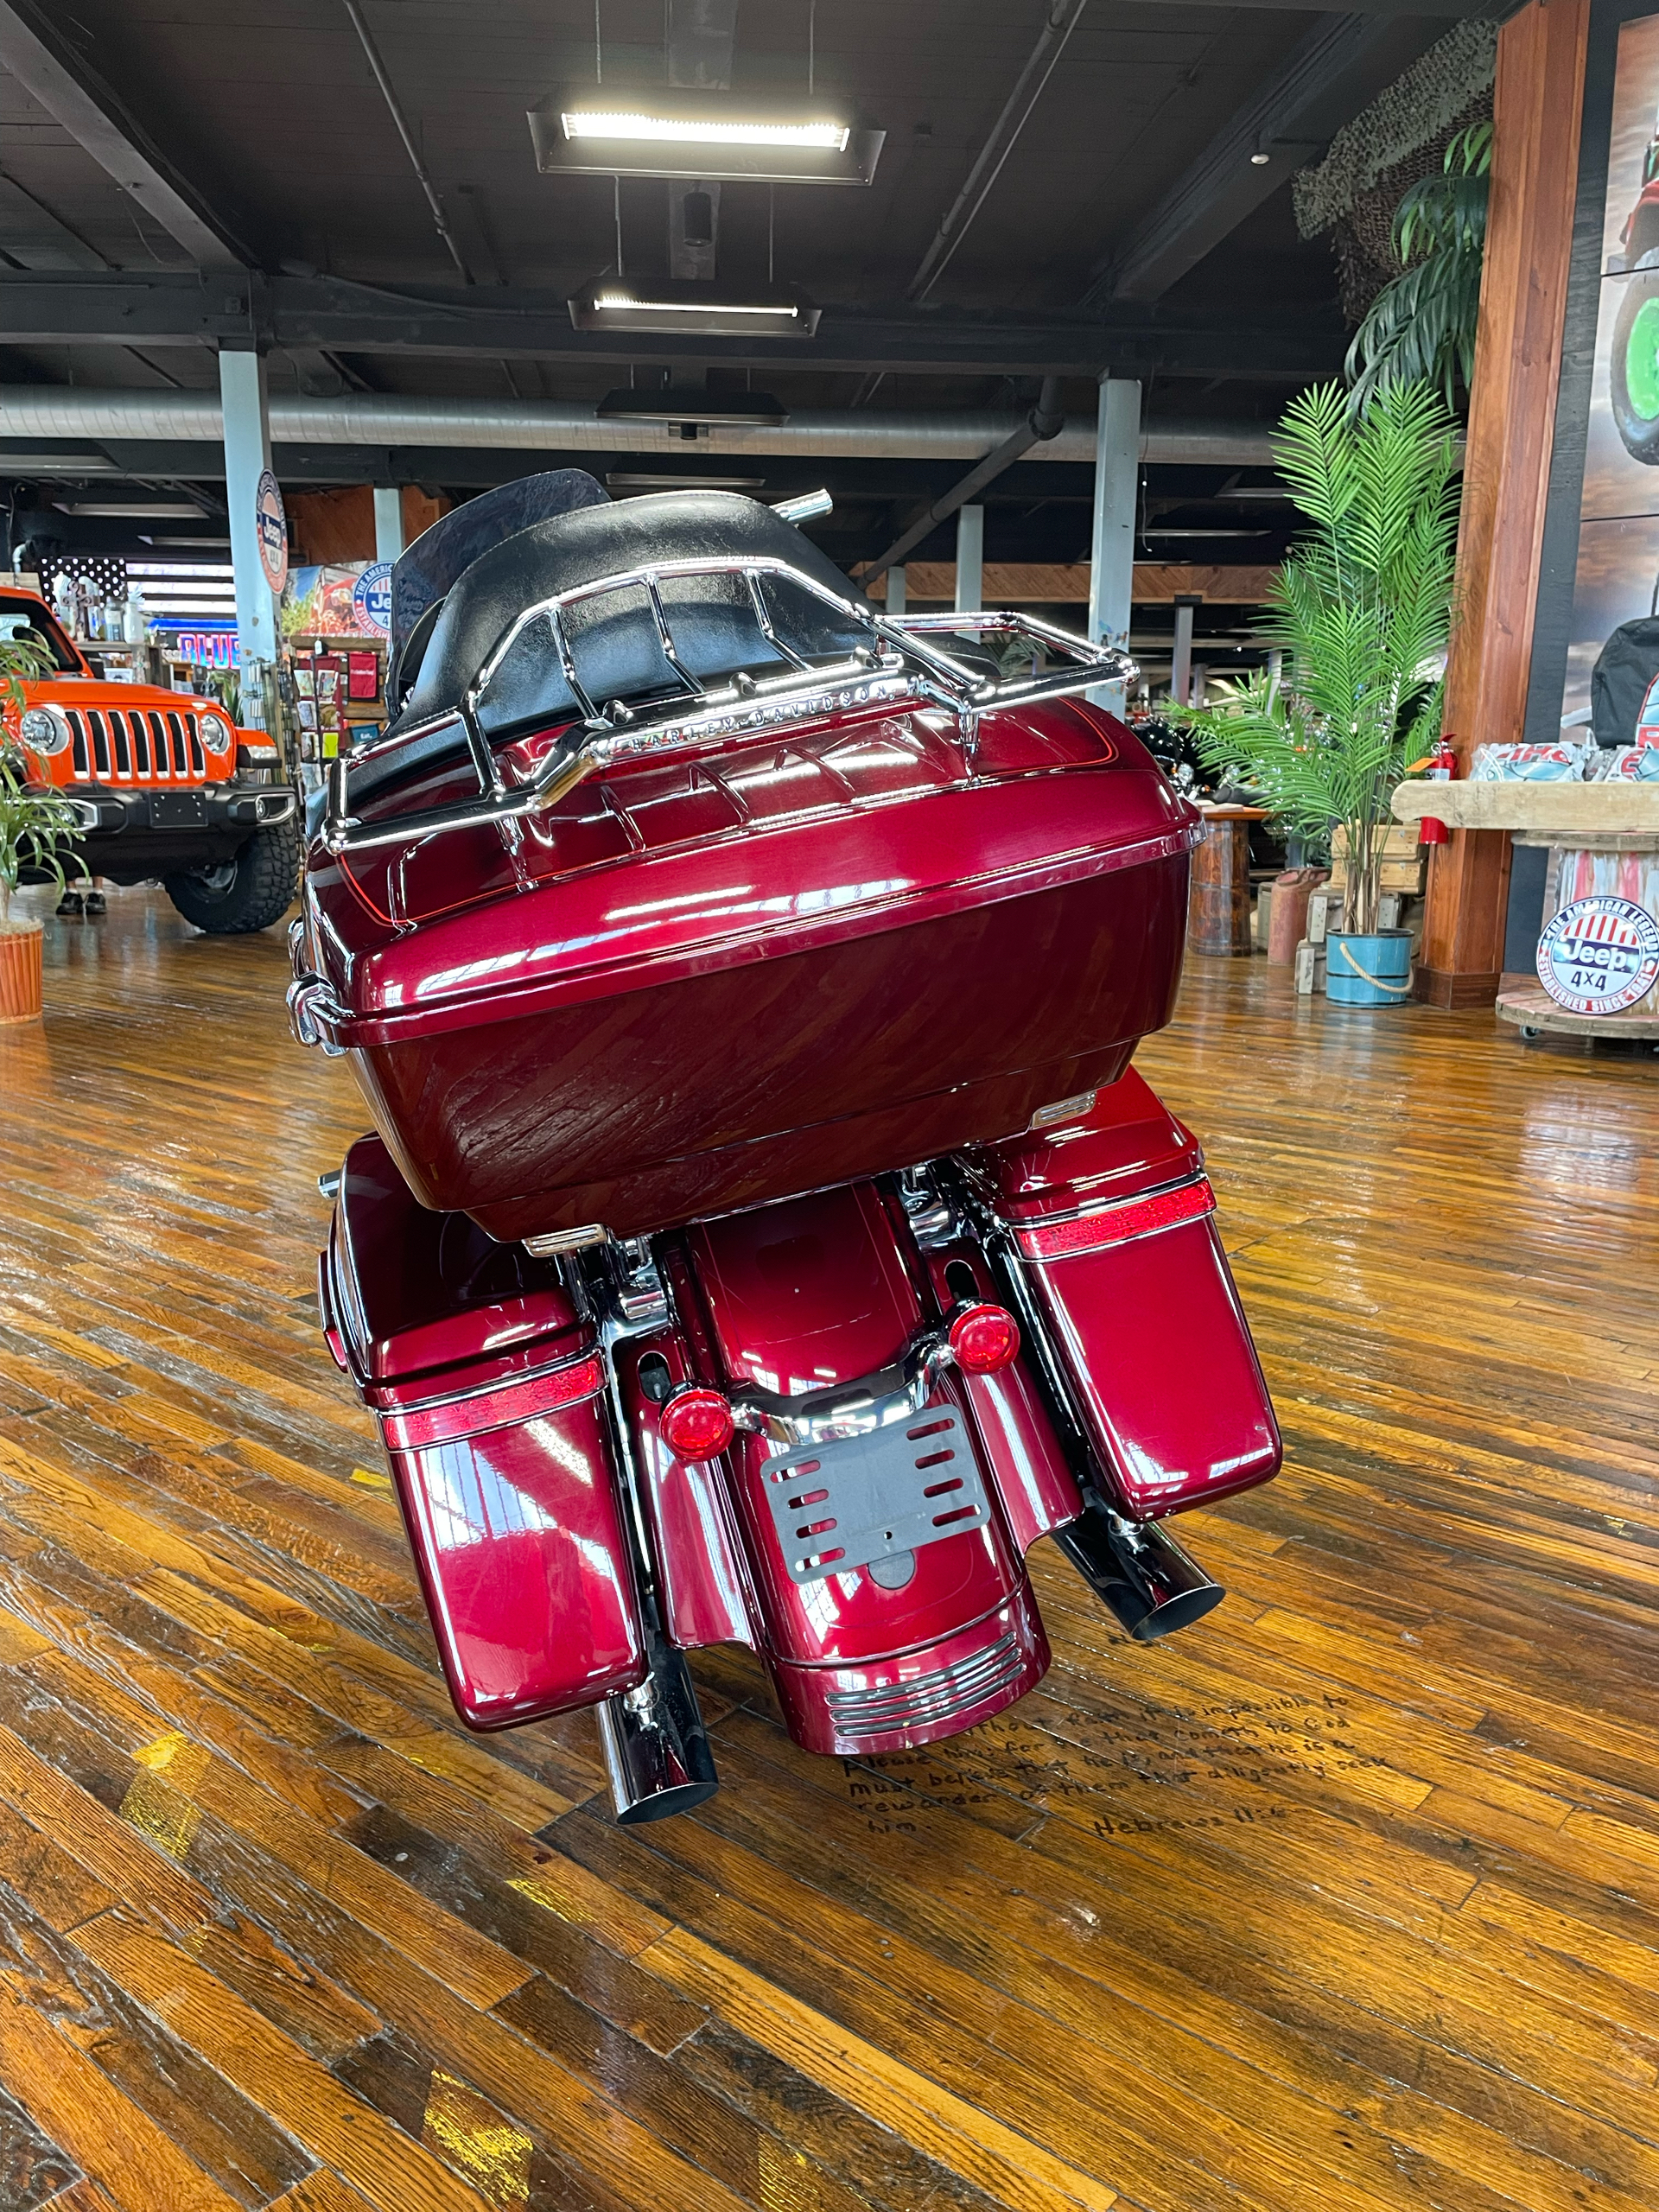 2014 Harley-Davidson Street Glide® Special in Laurel, Mississippi - Photo 3